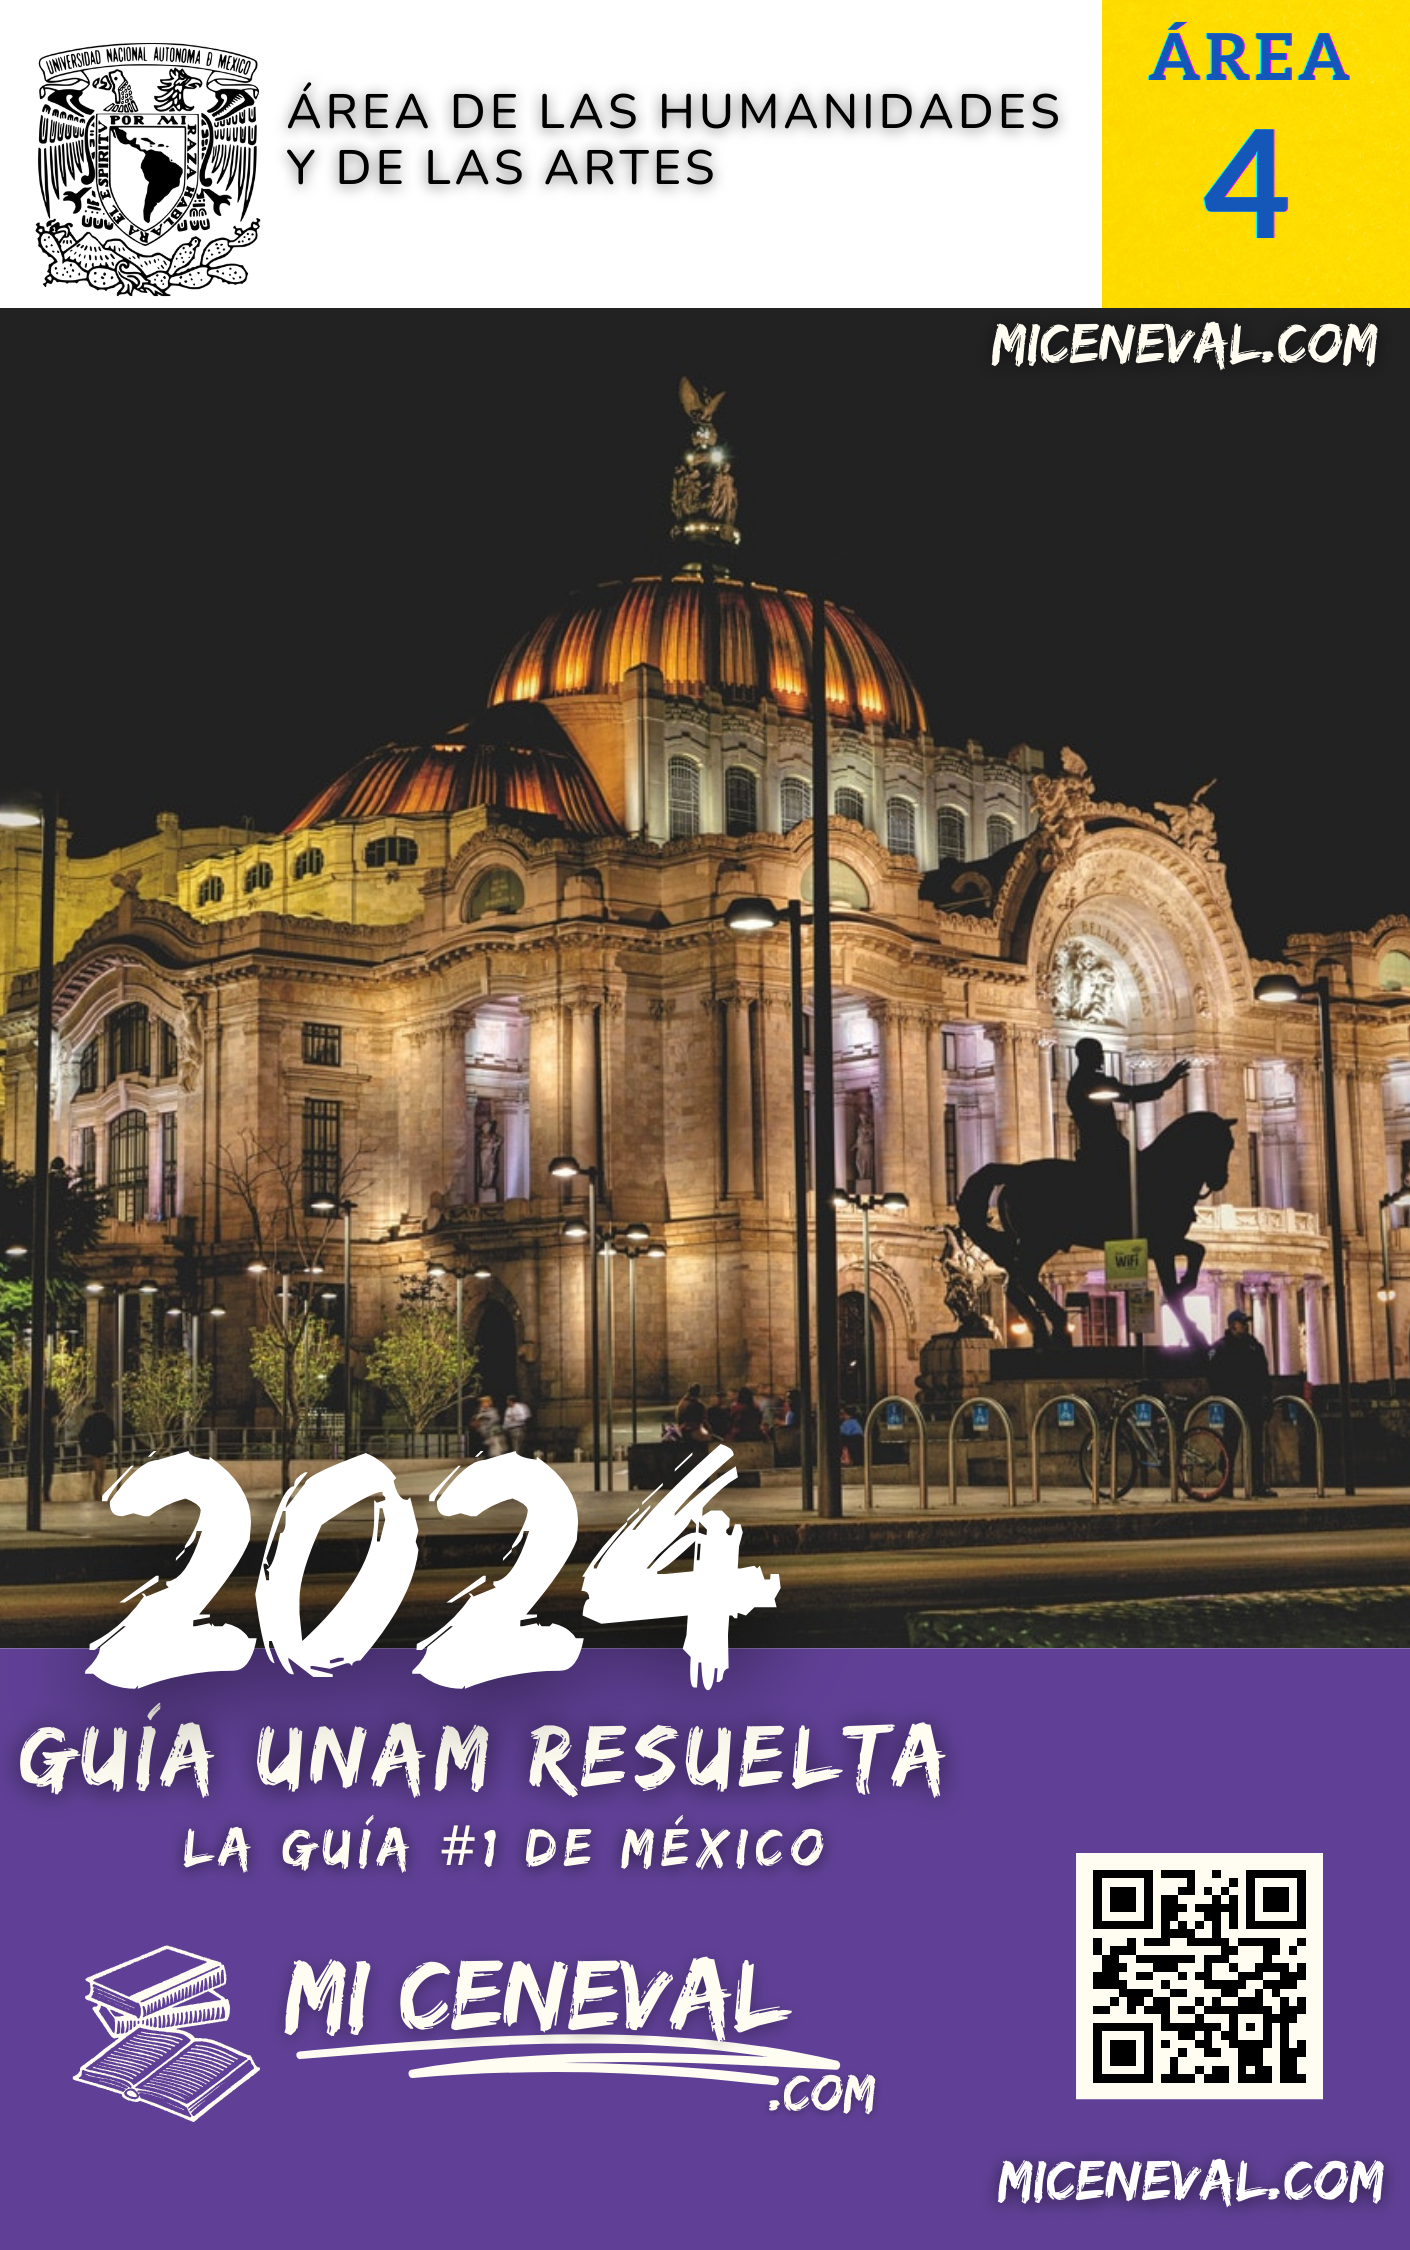 Guía UNAM - Area 4